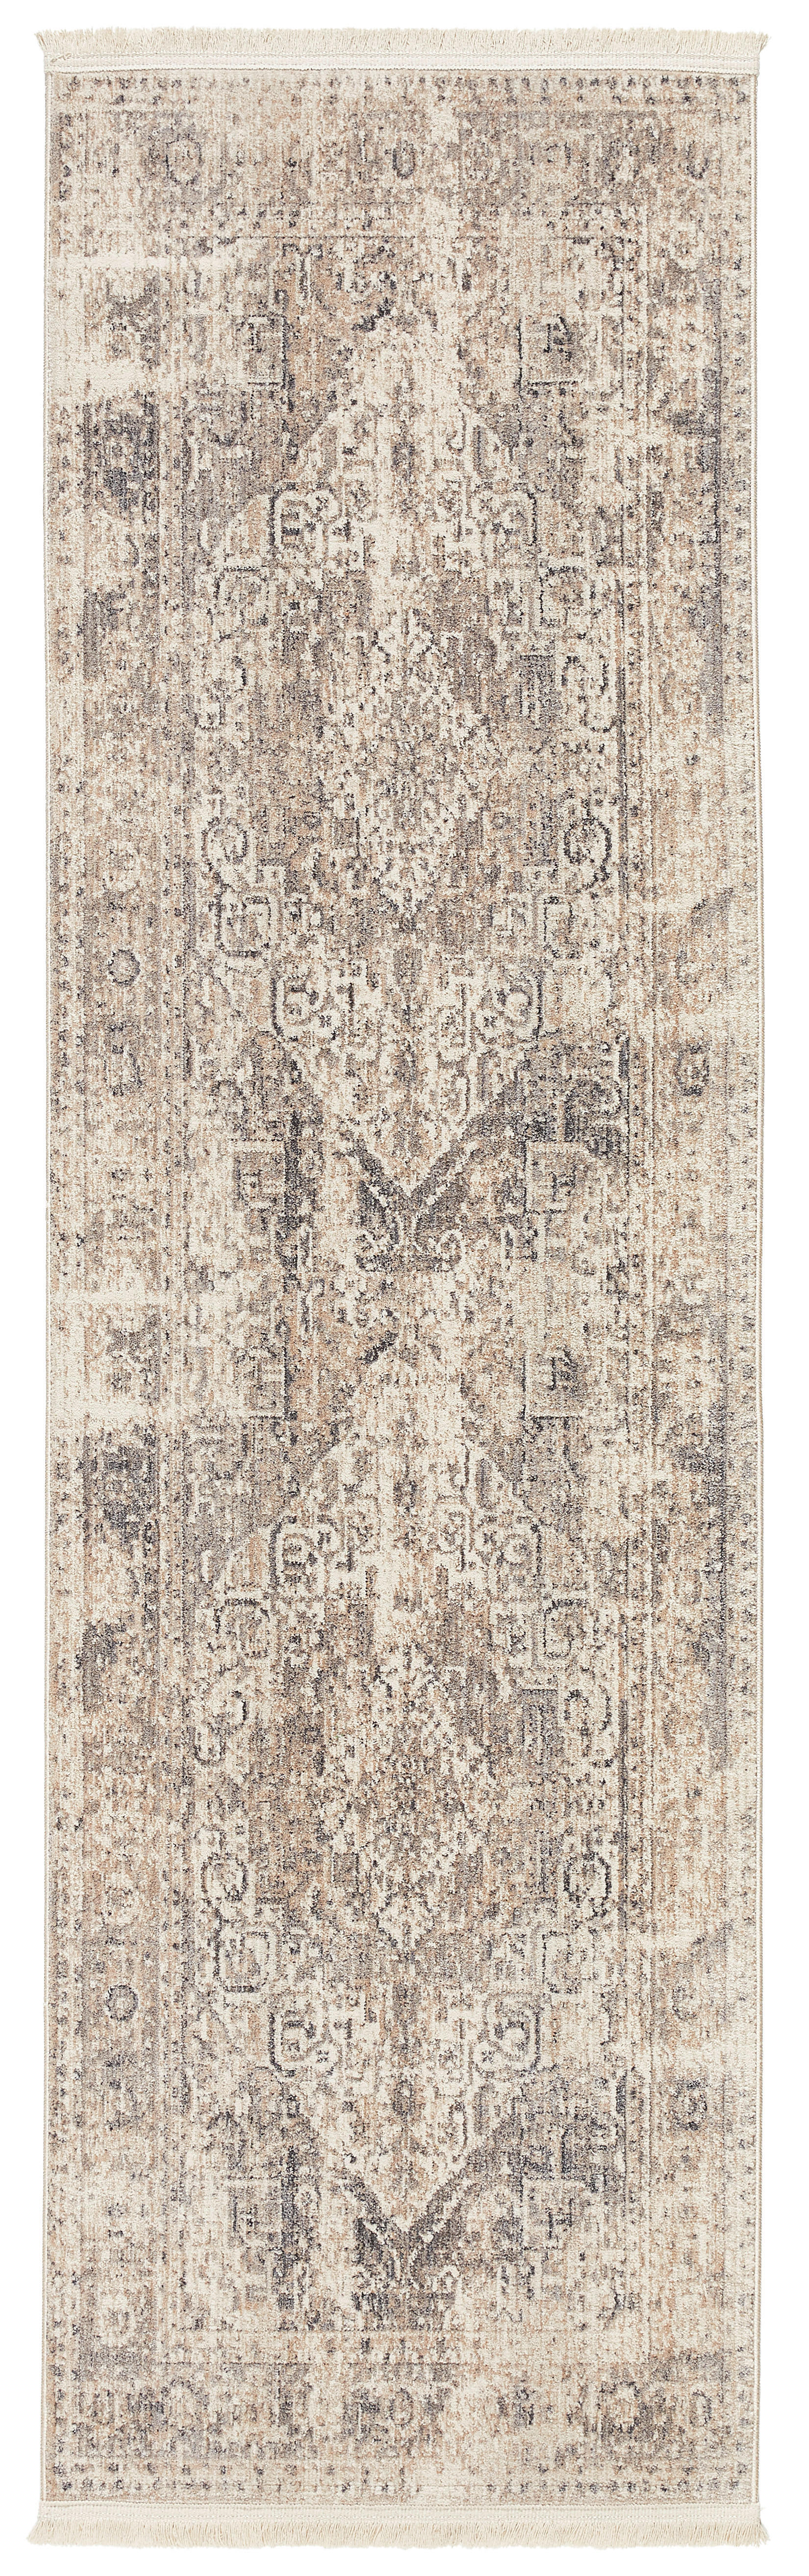 LÄUFER 70/240 cm Samarkand  - Beige/Grau, LIFESTYLE, Kunststoff/Textil (70/240cm) - Novel